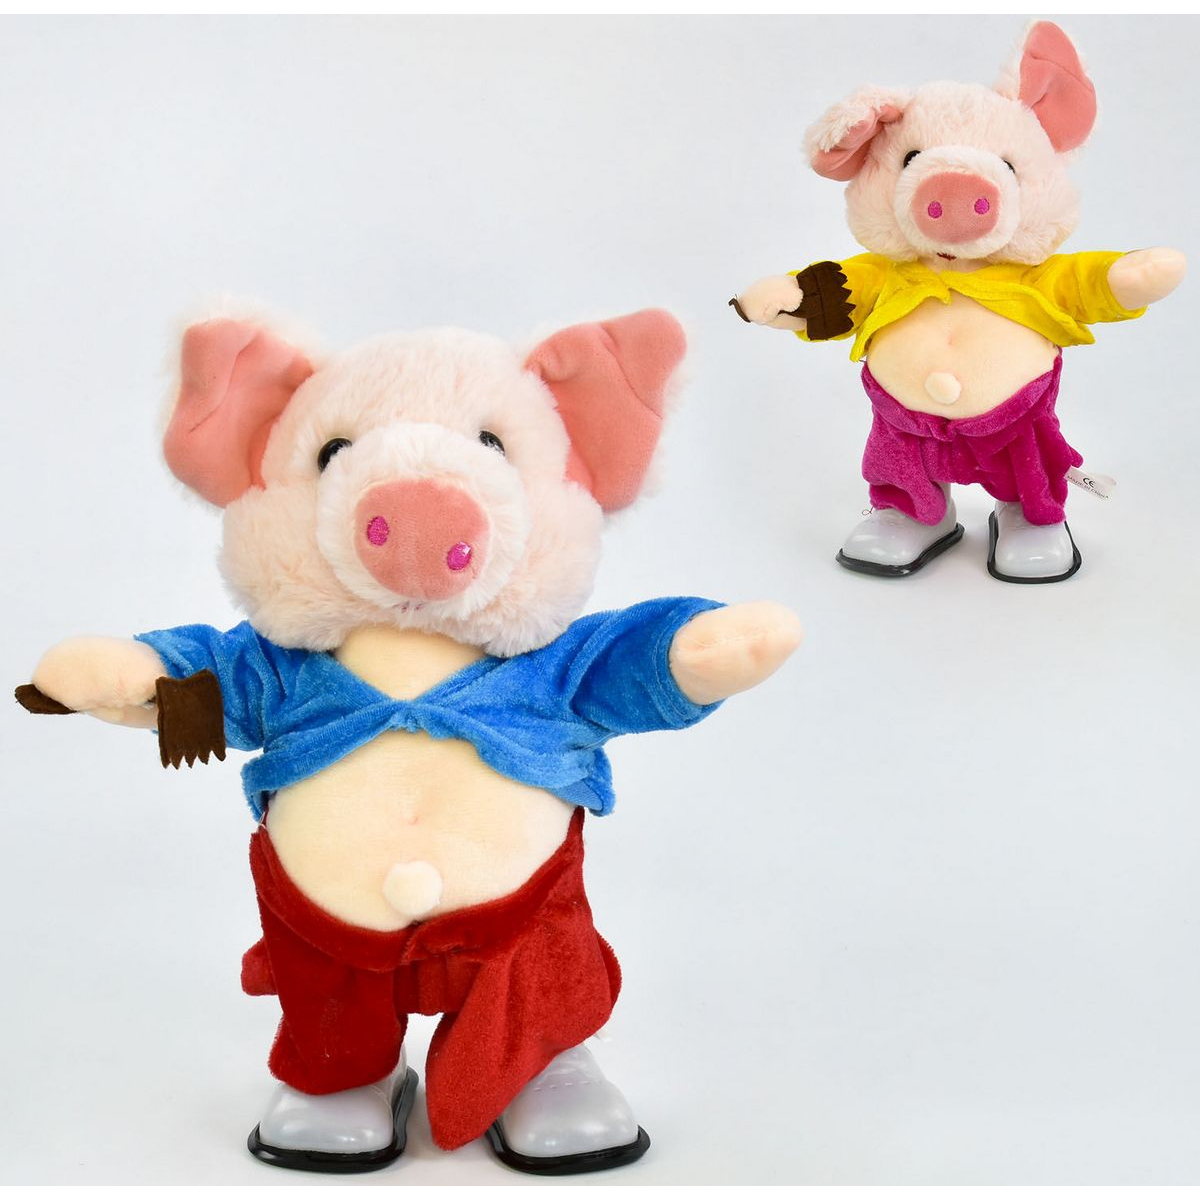 Музыкальная игрушка "Свинка". Танцующая свинья игрушка. Игрушка Свинка поющая и Танцующая. Игрушка свинья танцует и поет. Свинья 30